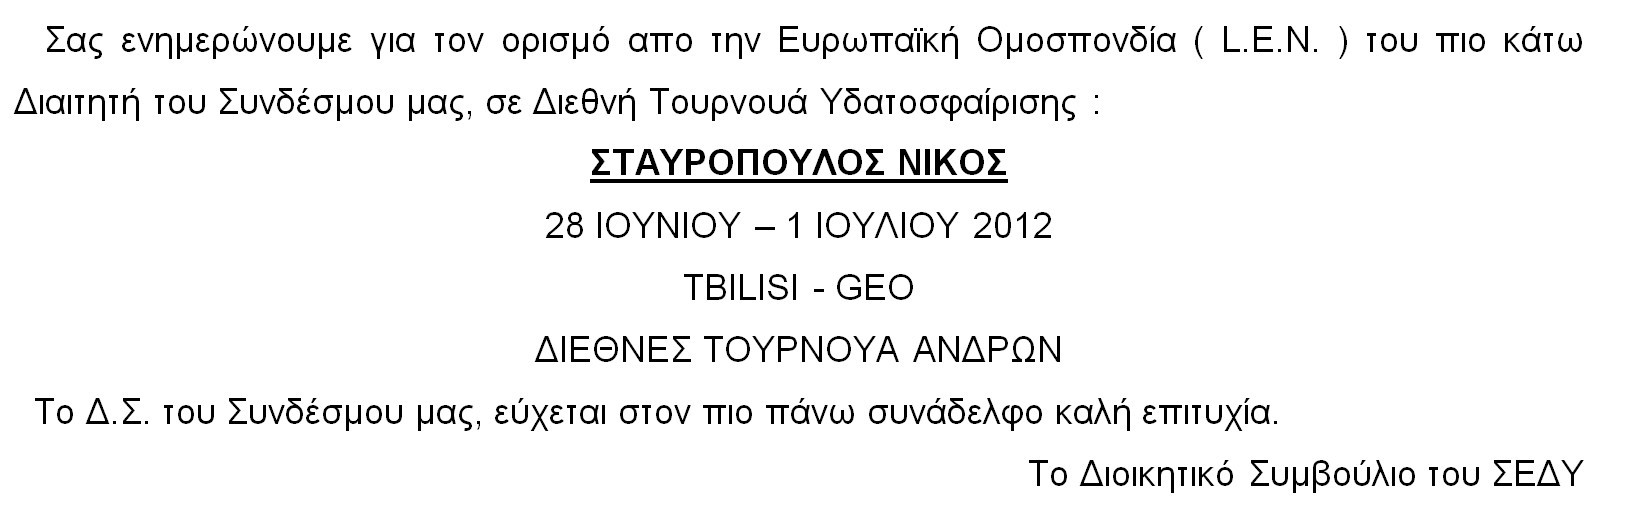 ENHMEROTIKO_28.6.2012